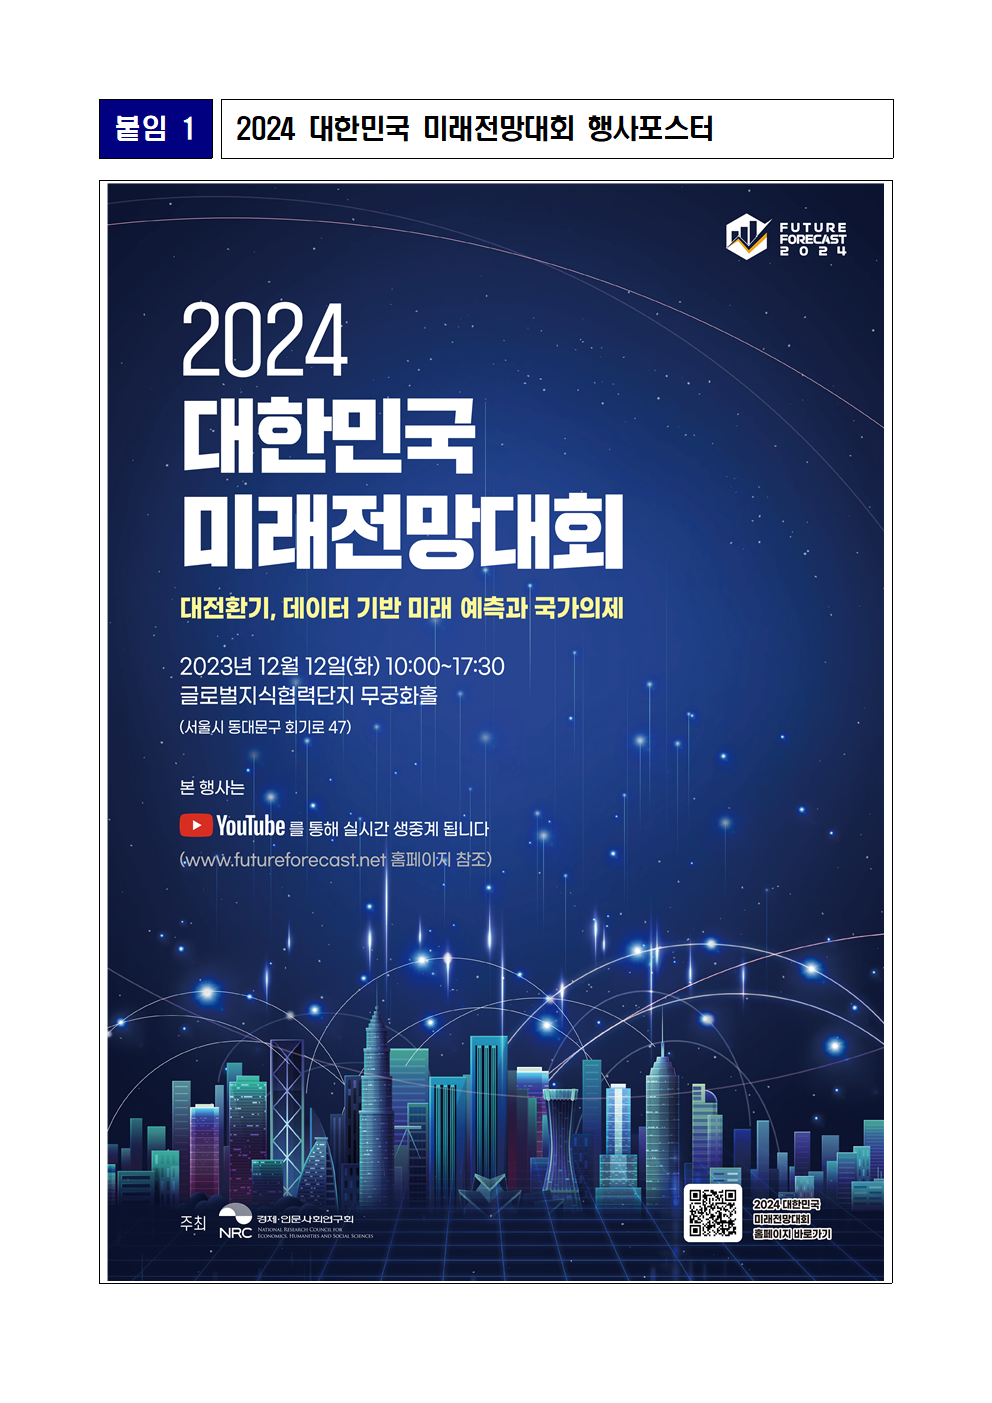 [붙임 1] 2024 대한민국 미래전망대회 행사포스터 상세 하단 참조